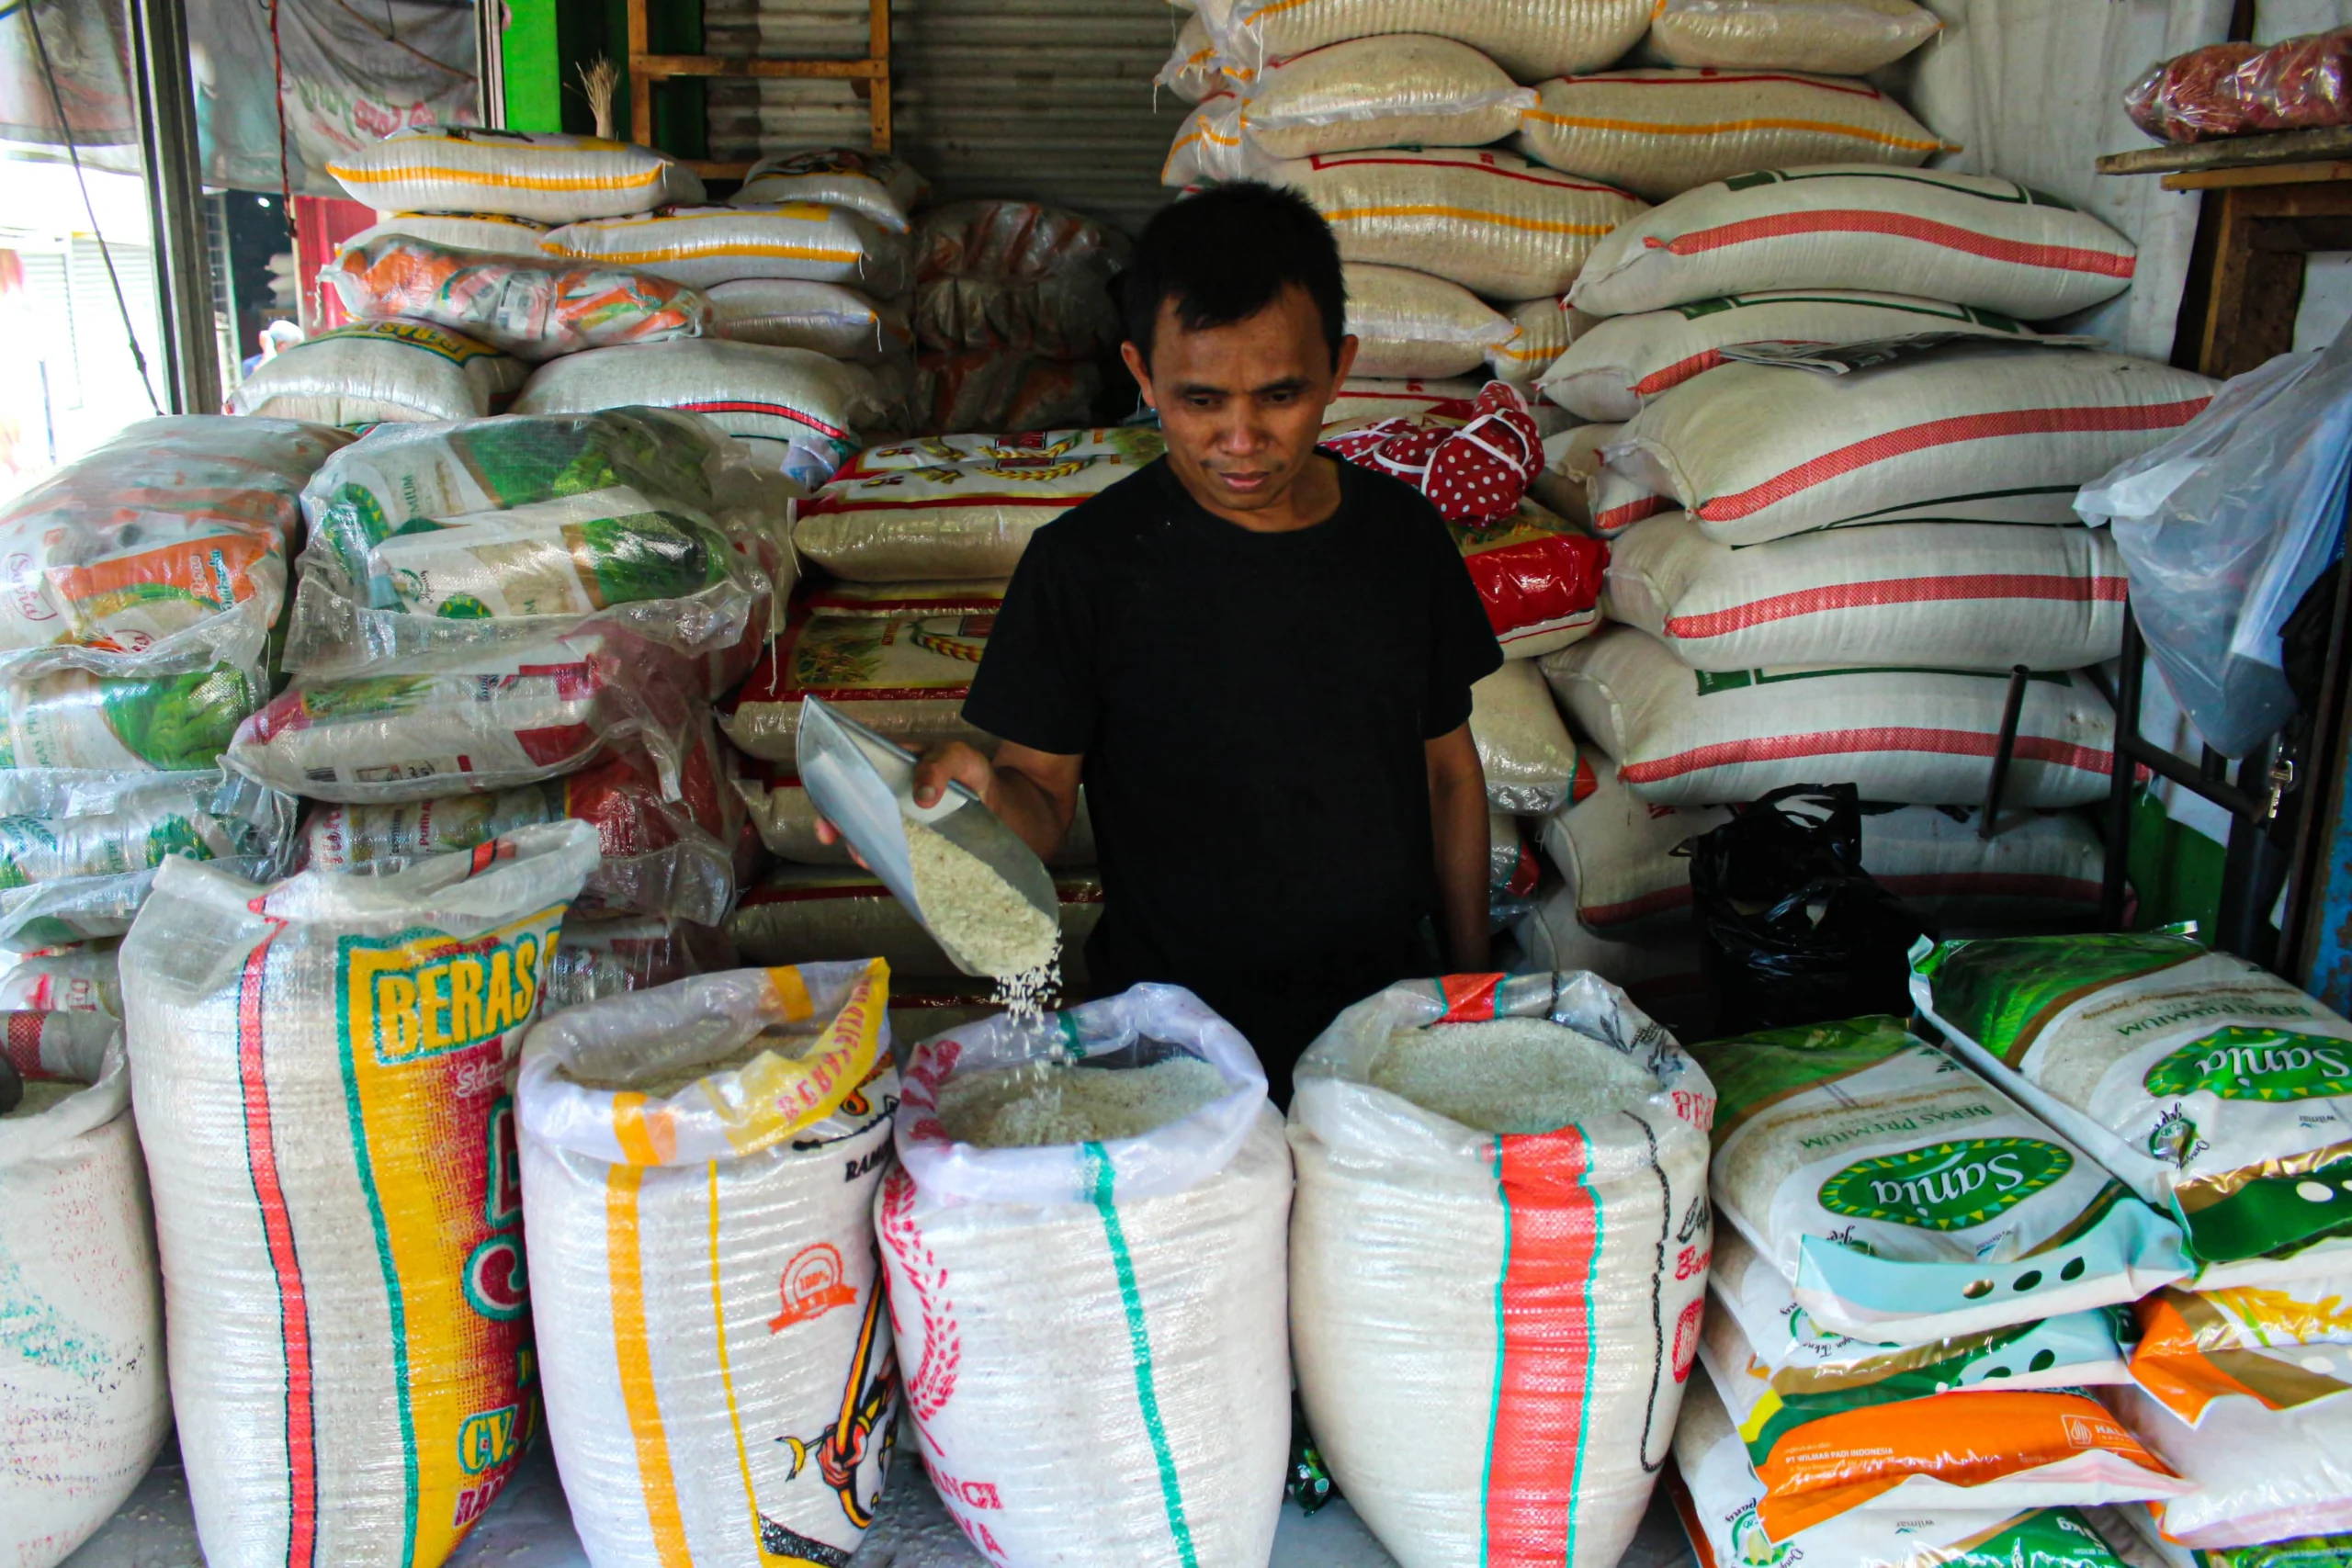 ILUSTRASI: Pedagang beras tengah menanti pembeli di kiosnya, Pasar Gedebage, Kota Bandung. (Pandu Muslim/Jabarekspres)